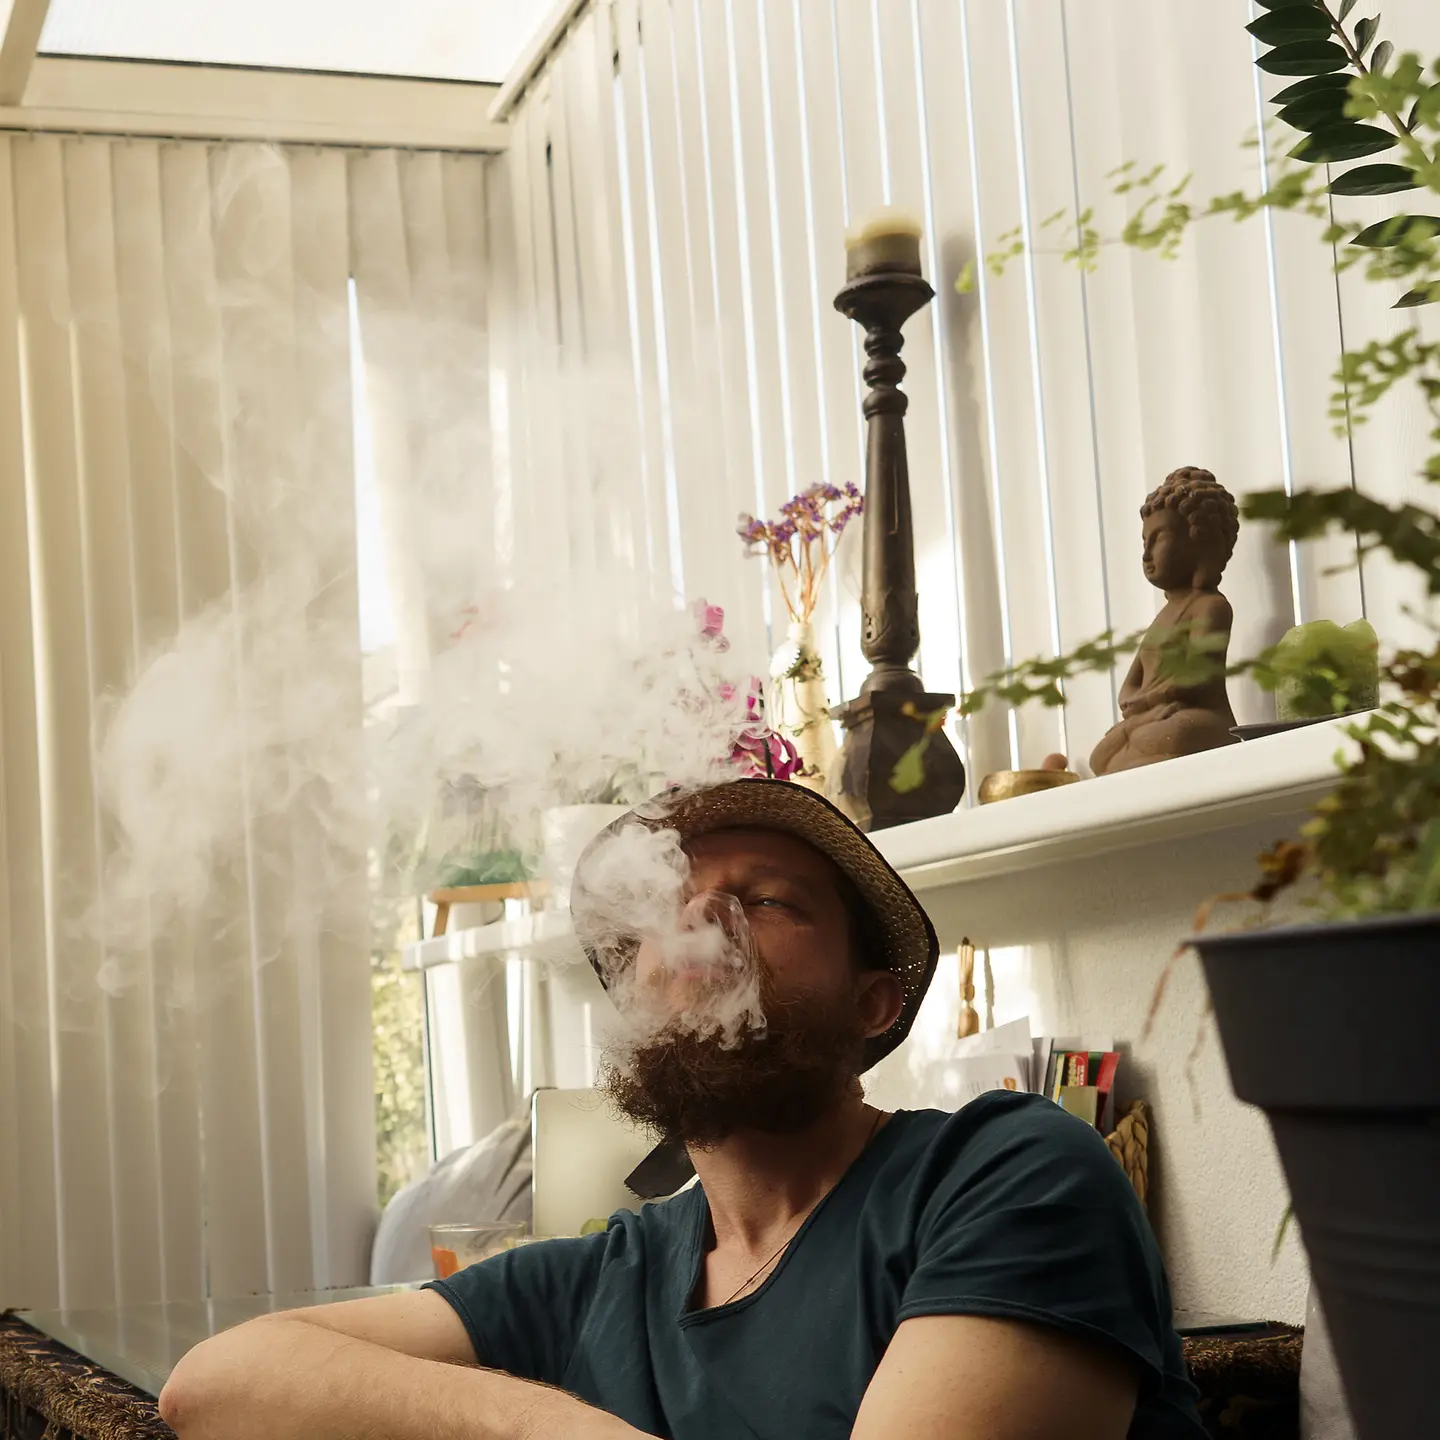 Mann konsumiert medizinisches Cannabis mit einem Vaporizer